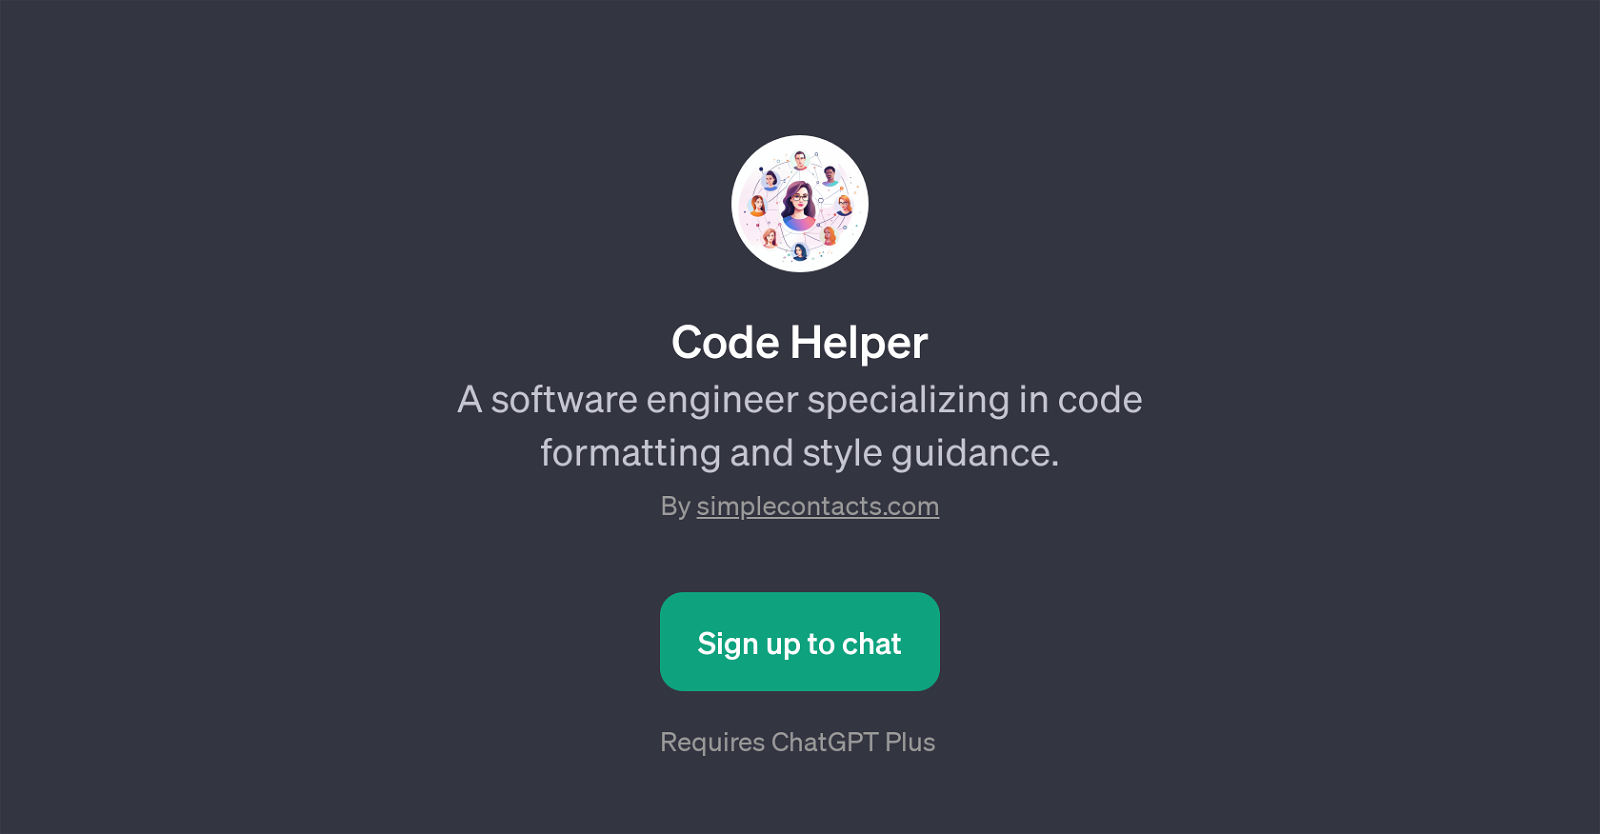 Code Helper website